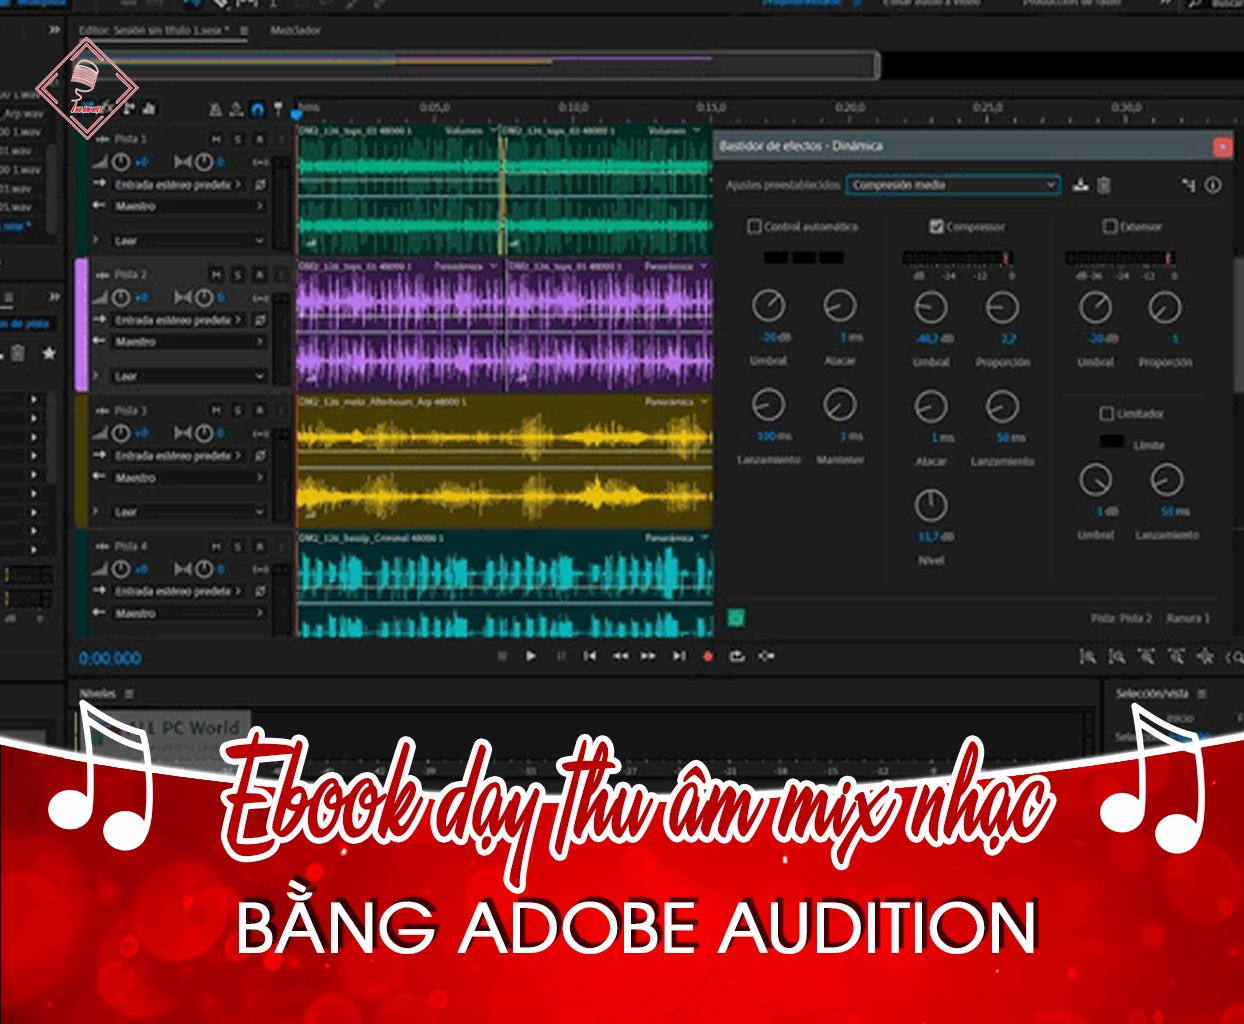 Ebook dạy thu âm mix nhạc bằng phần mềm Adobe Audition CS6 dễ hiểu nhất